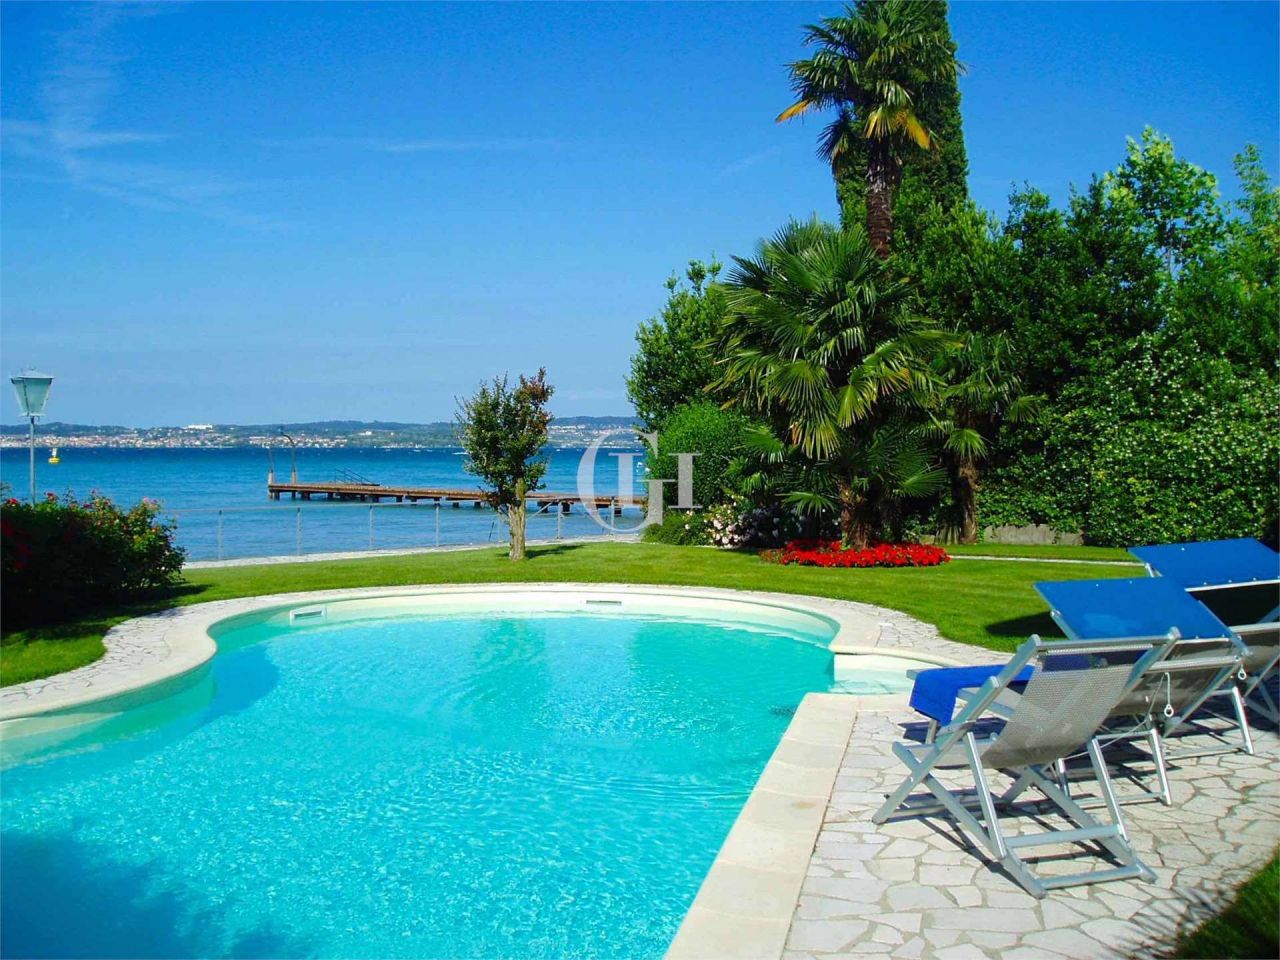 Villa por Lago de Garda, Italia, 450 m2 - imagen 1